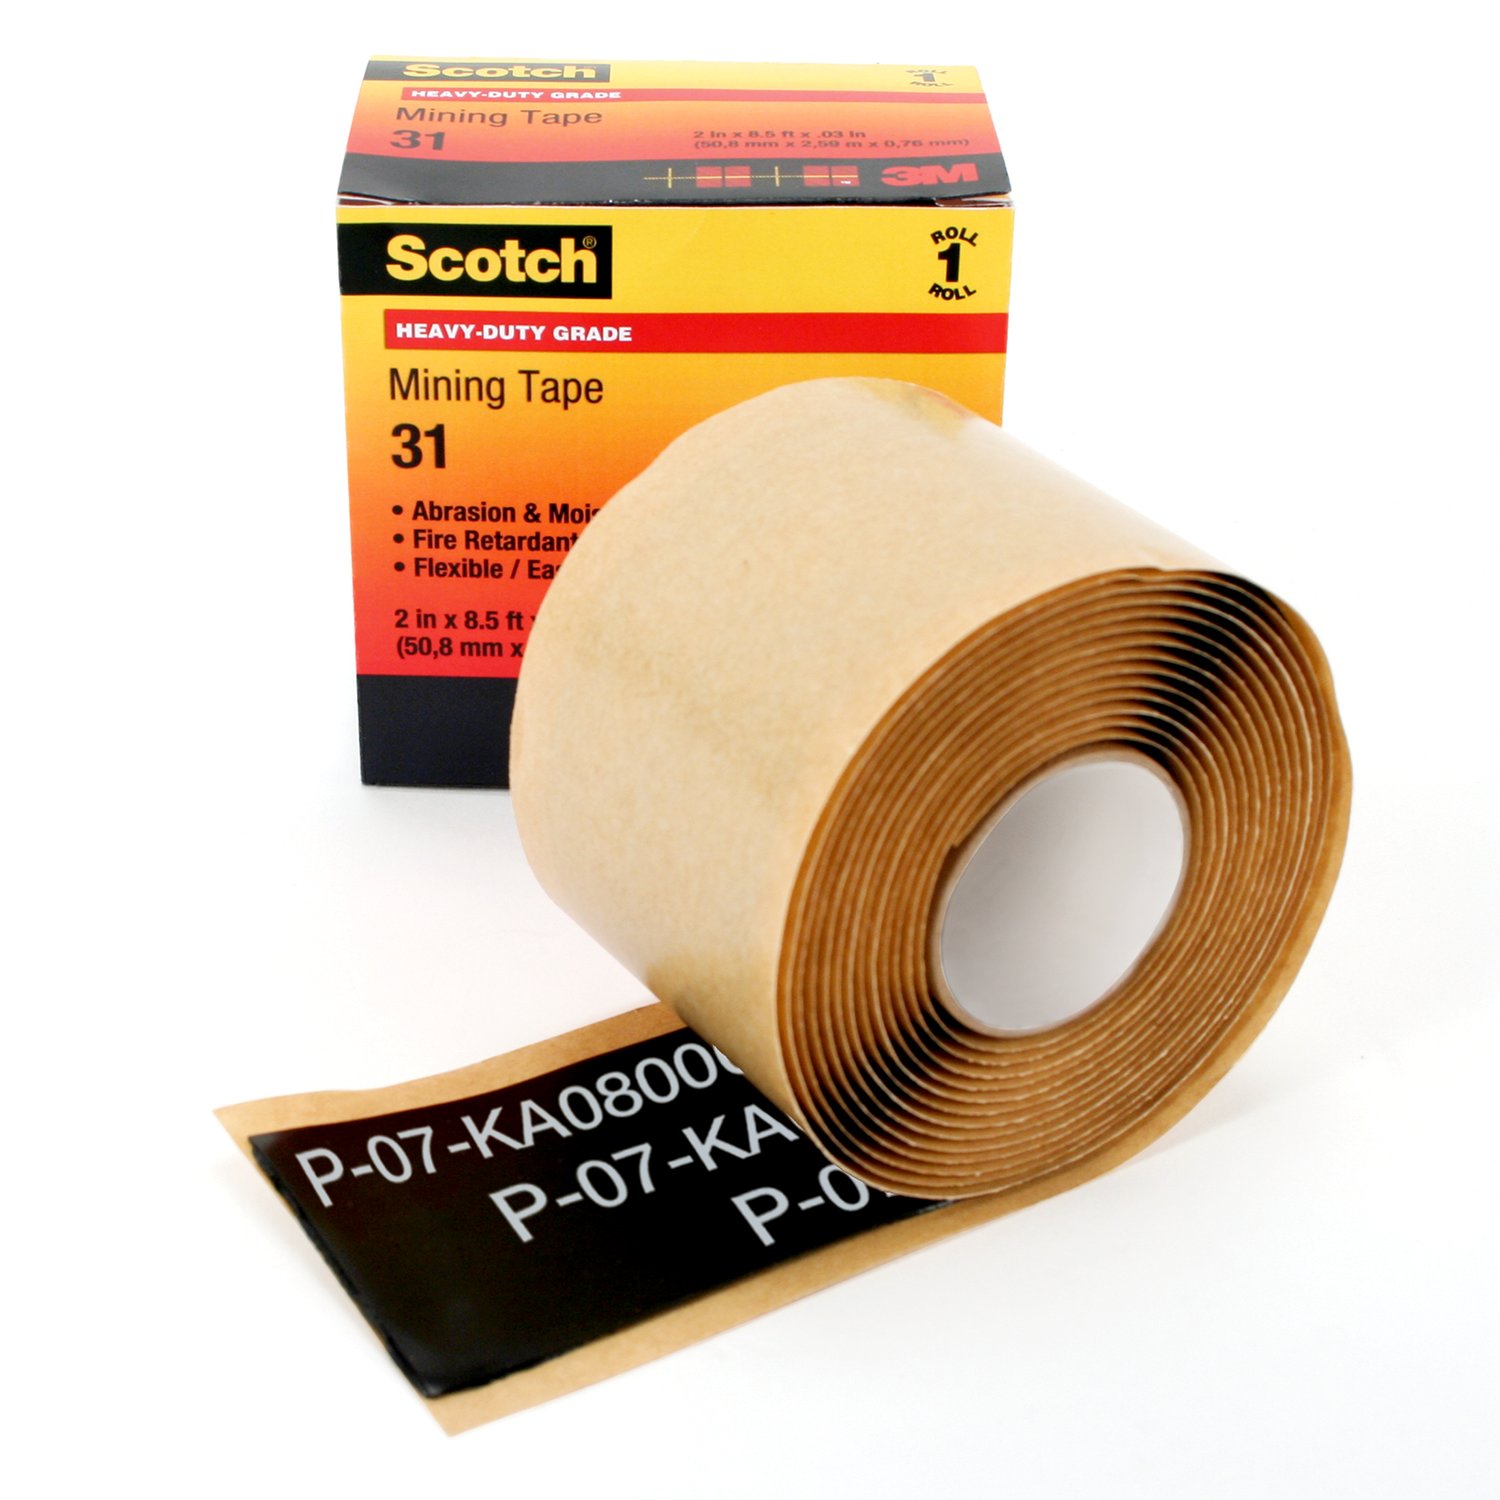 7000031769 - Scotch Heavy-Duty Mining Tape 31, 2 in x 8-1/2 ft, Black, 1
roll/carton, 10 rolls/Case